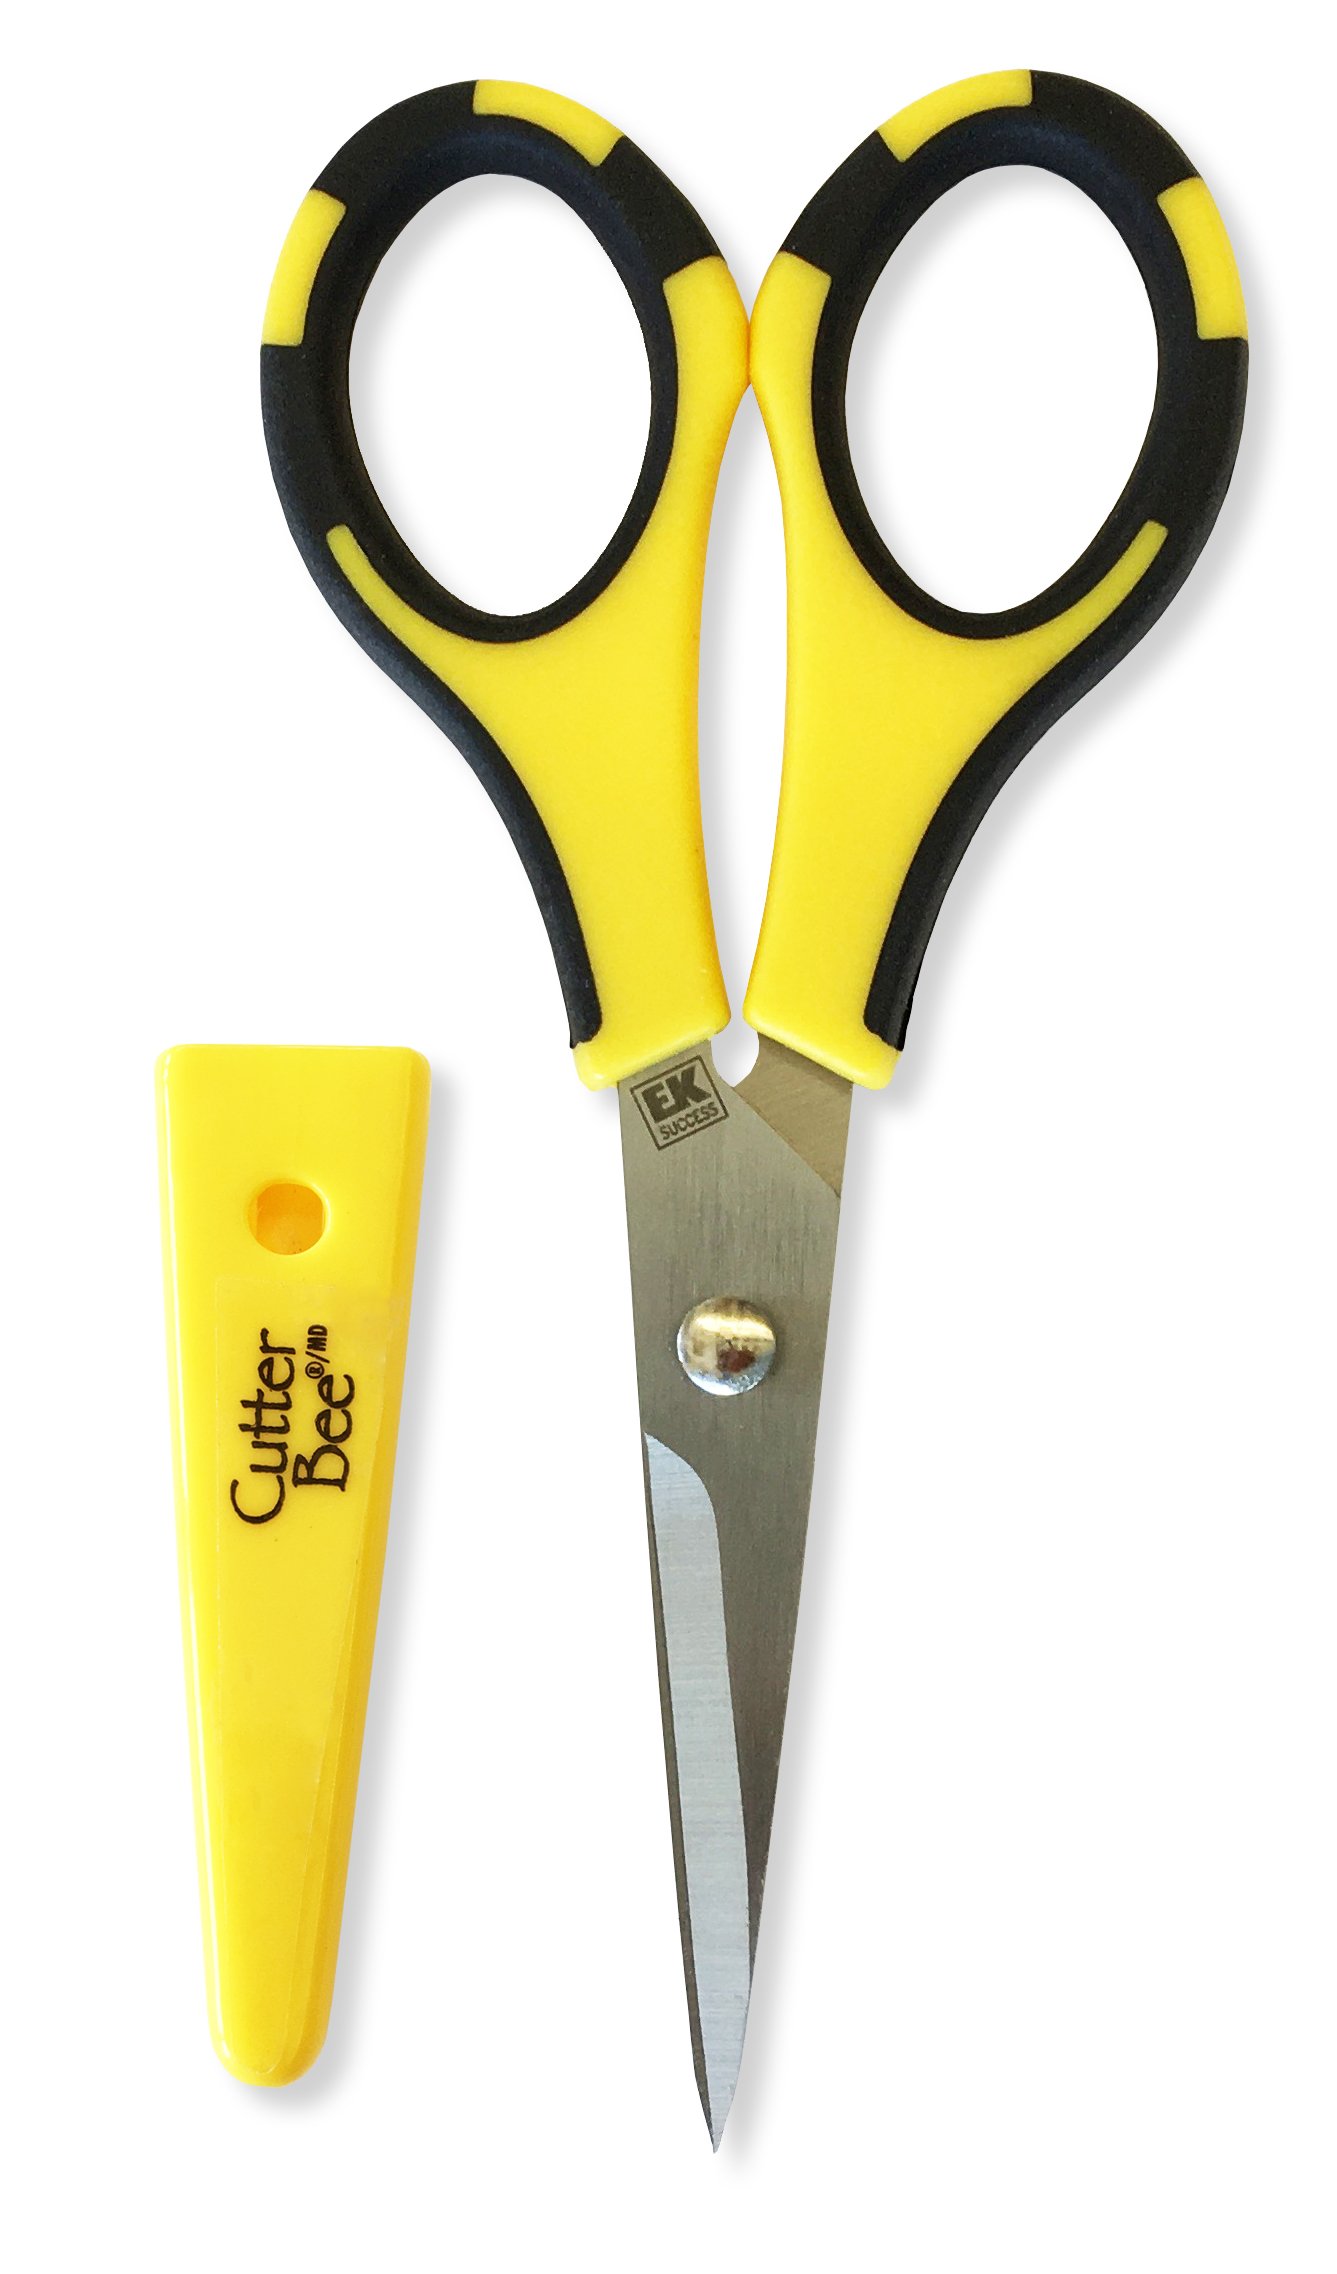 EK Success, Other, Cutter Bee Precision Cut Scissors